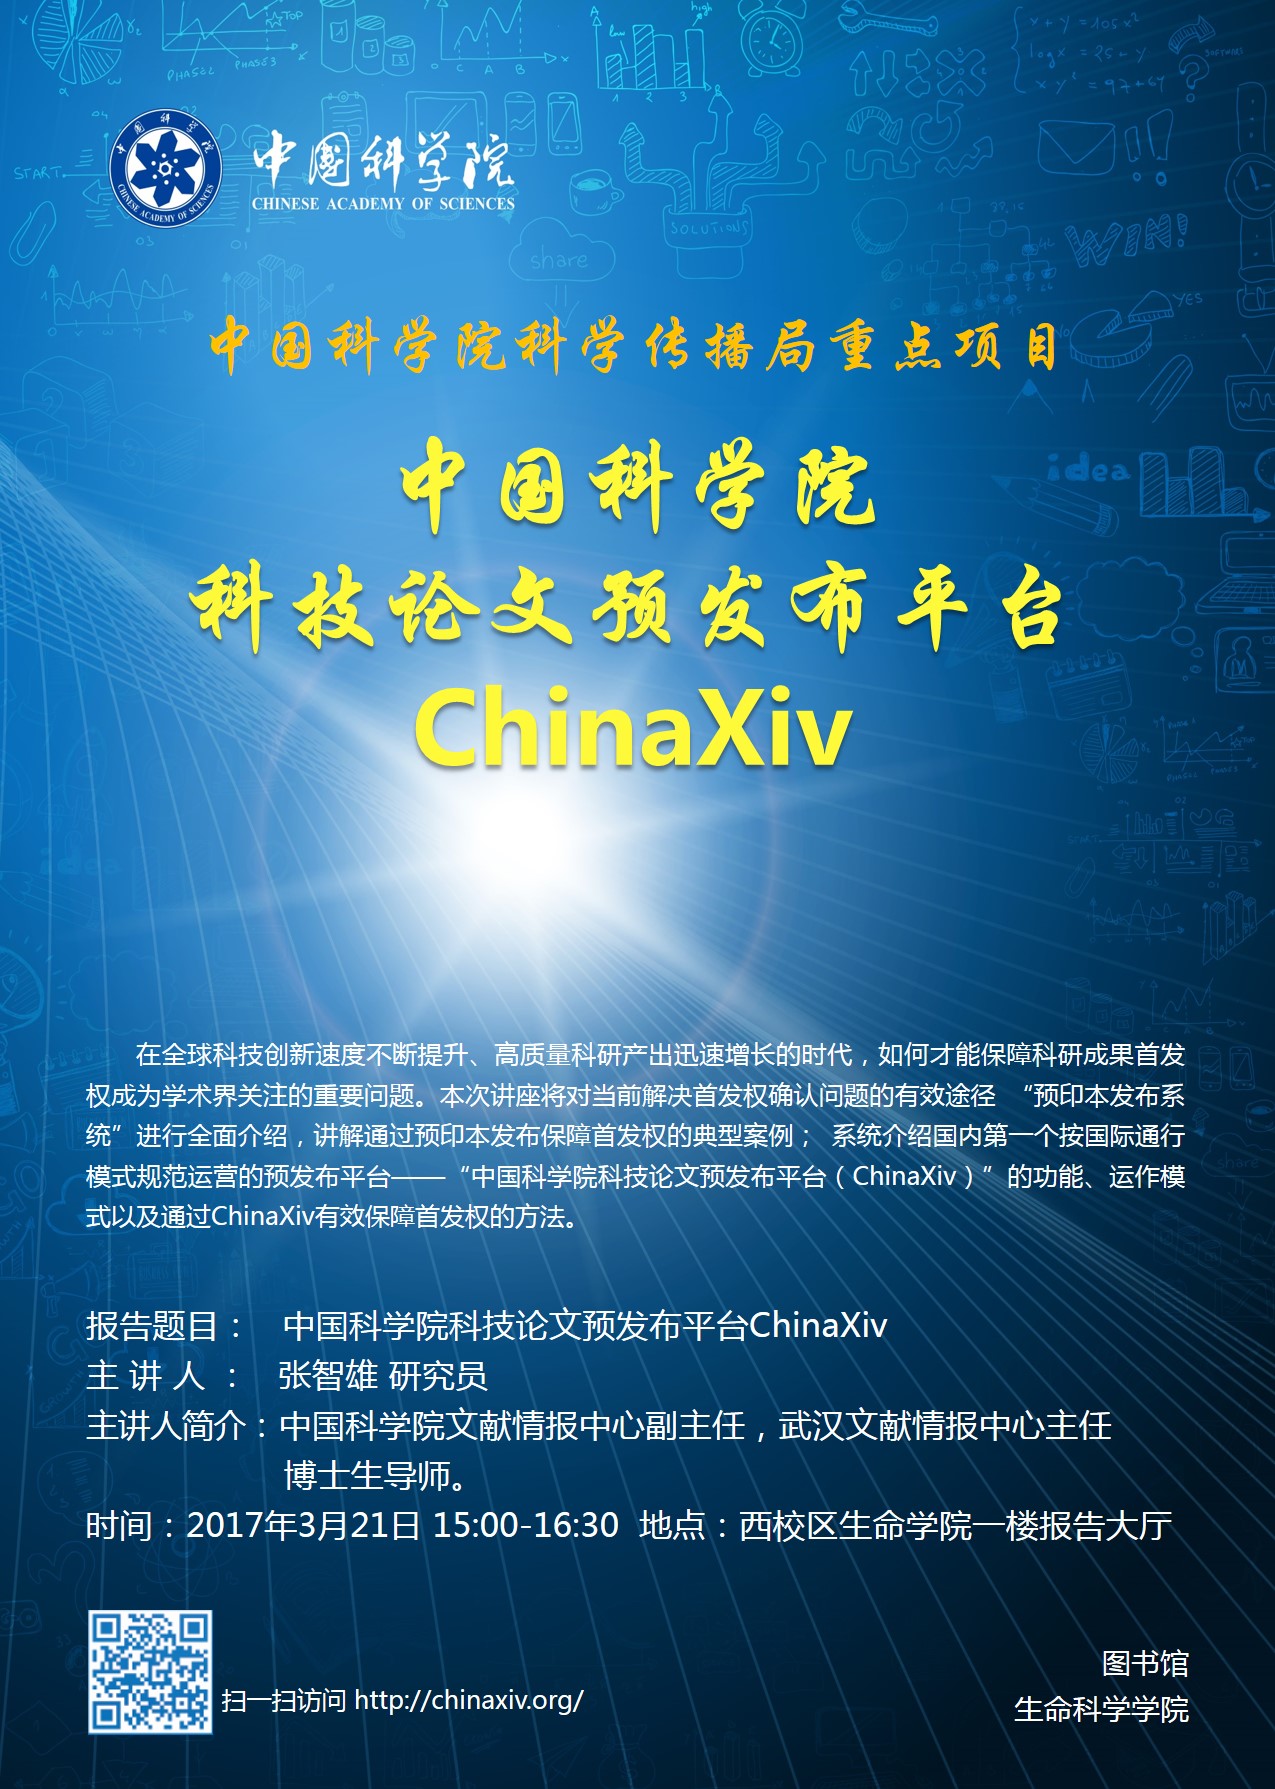 中国科学院科技论文预发布平台ChinaXiv